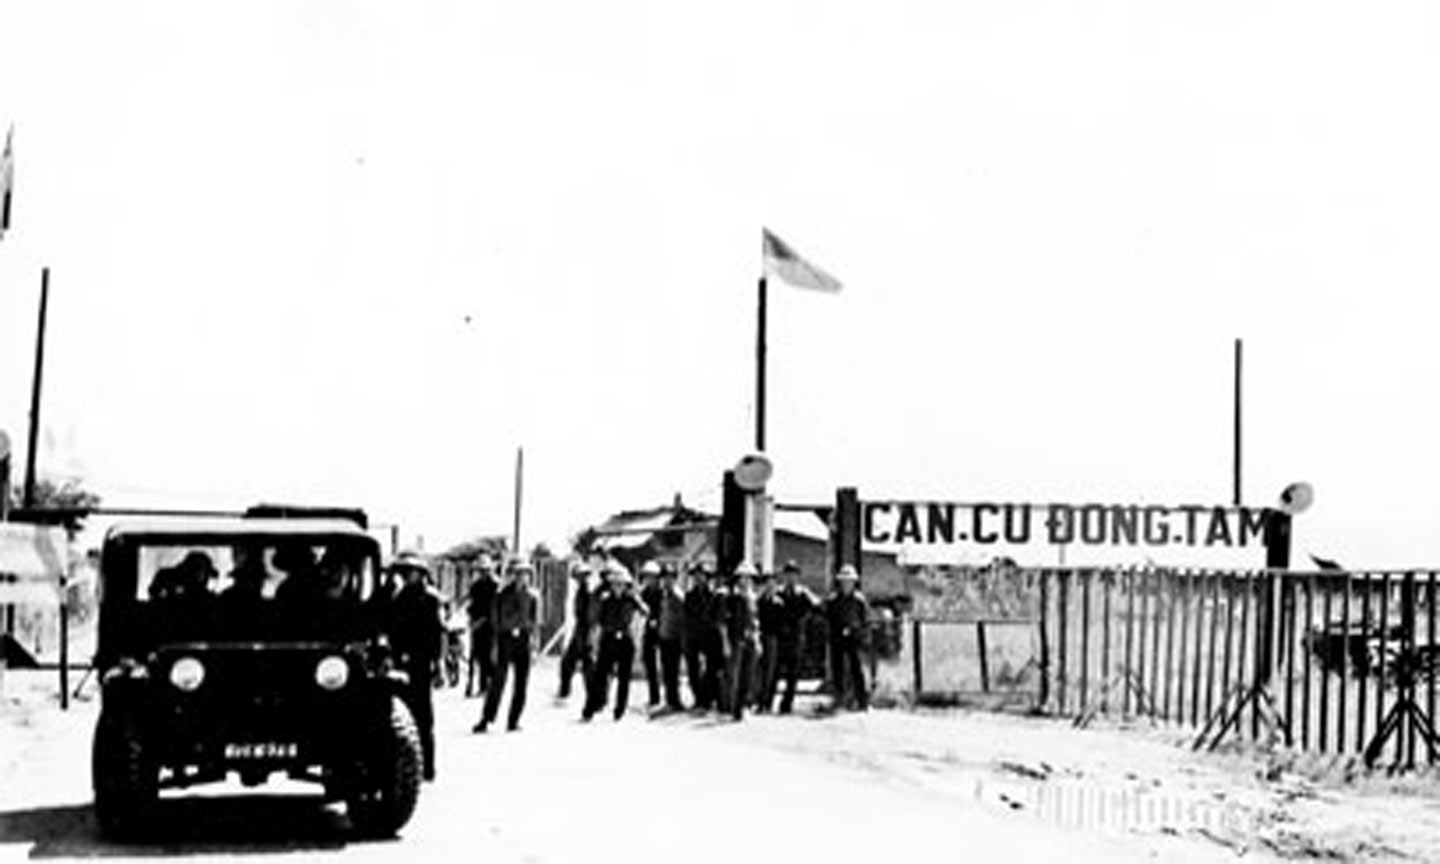  Quân giải phóng làm chủ “Căn cứ Đồng Tâm” ngày 30-4-1975.                                                                                 Ảnh: Tư liệu 